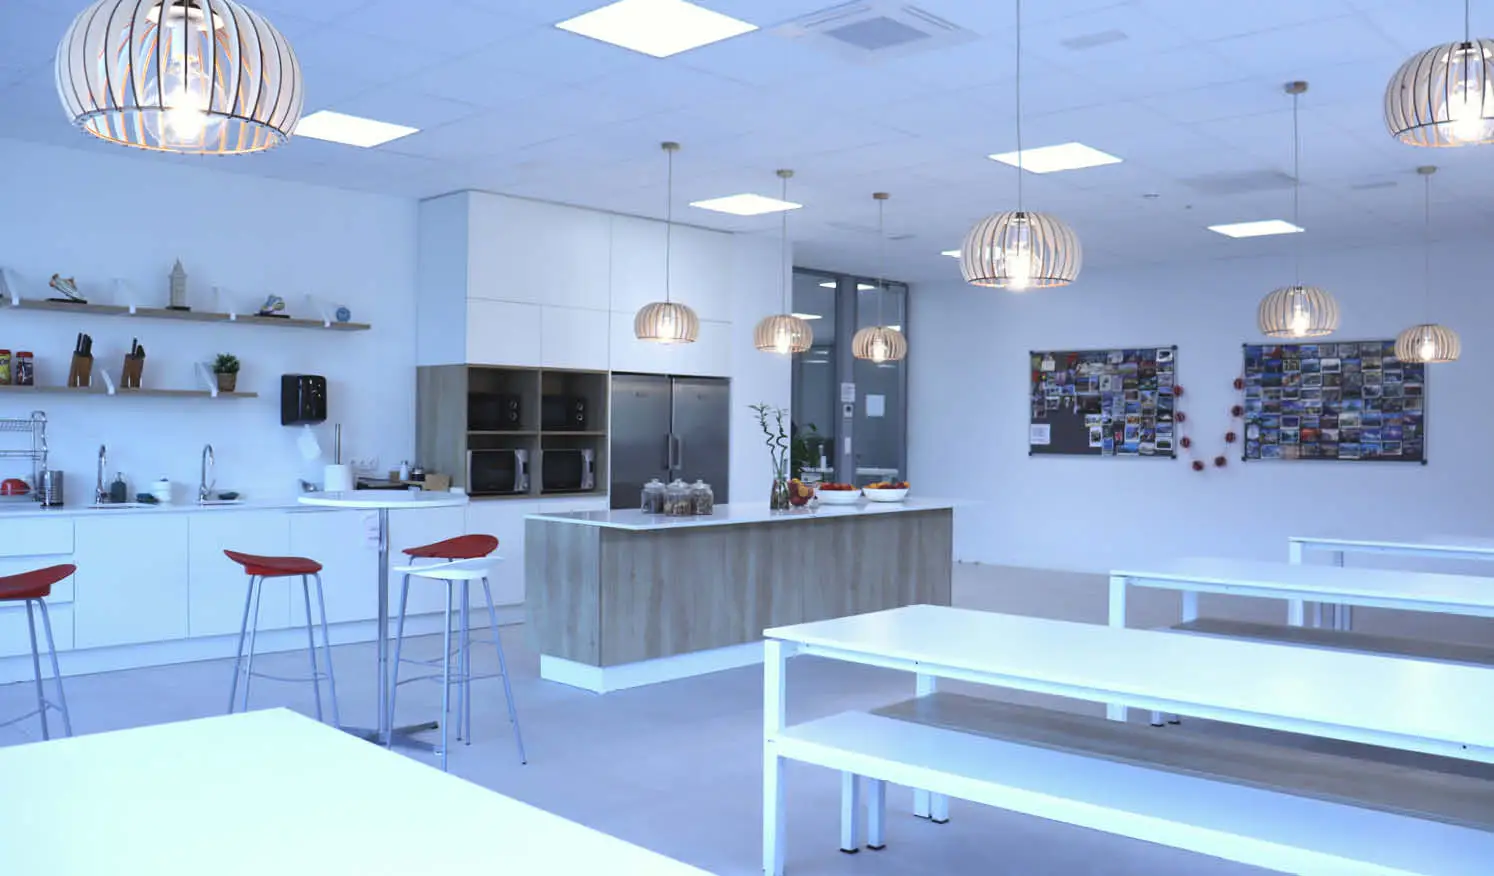 Office diseñado para el máximo confort con isla de cocina fabricada en carpintería metálica a medida